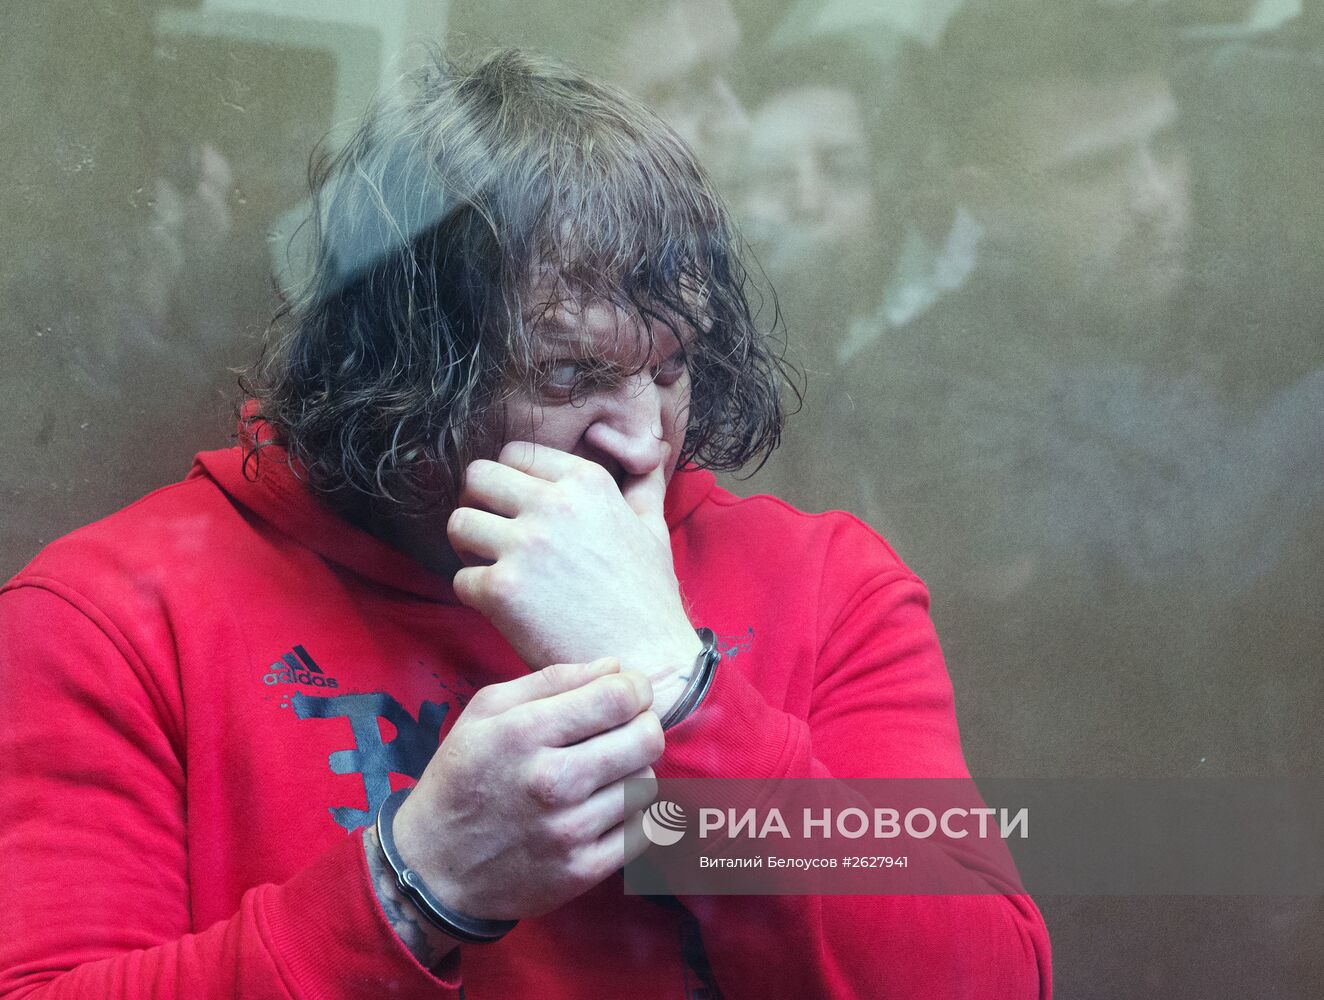 Александр Емельяненко приговорен к 4,5 годам колонии